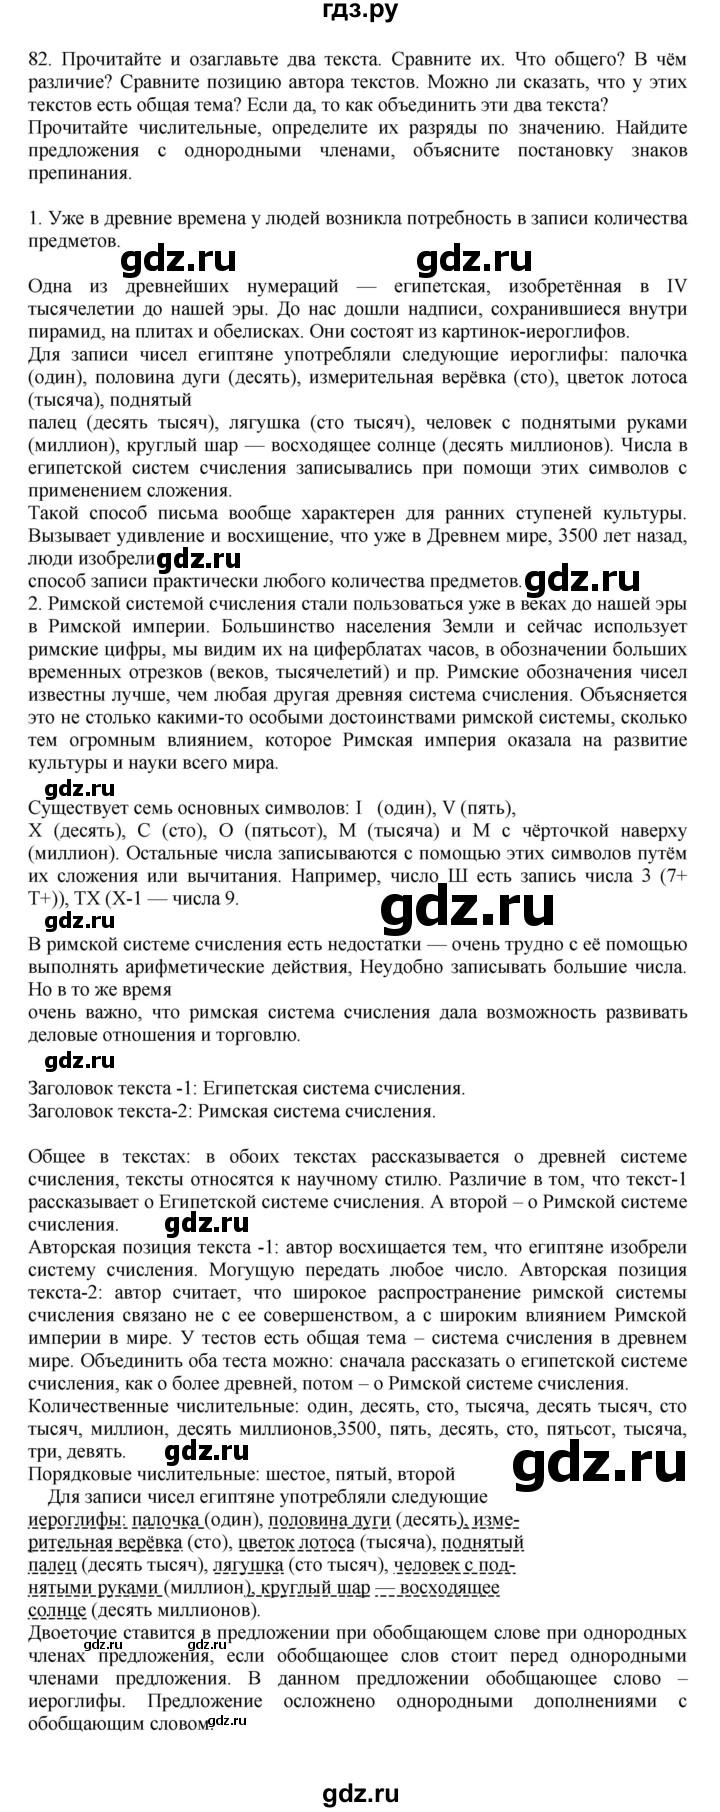 ГДЗ Упражнение 82 Русский Язык 7 Класс Баранов, Ладыженская